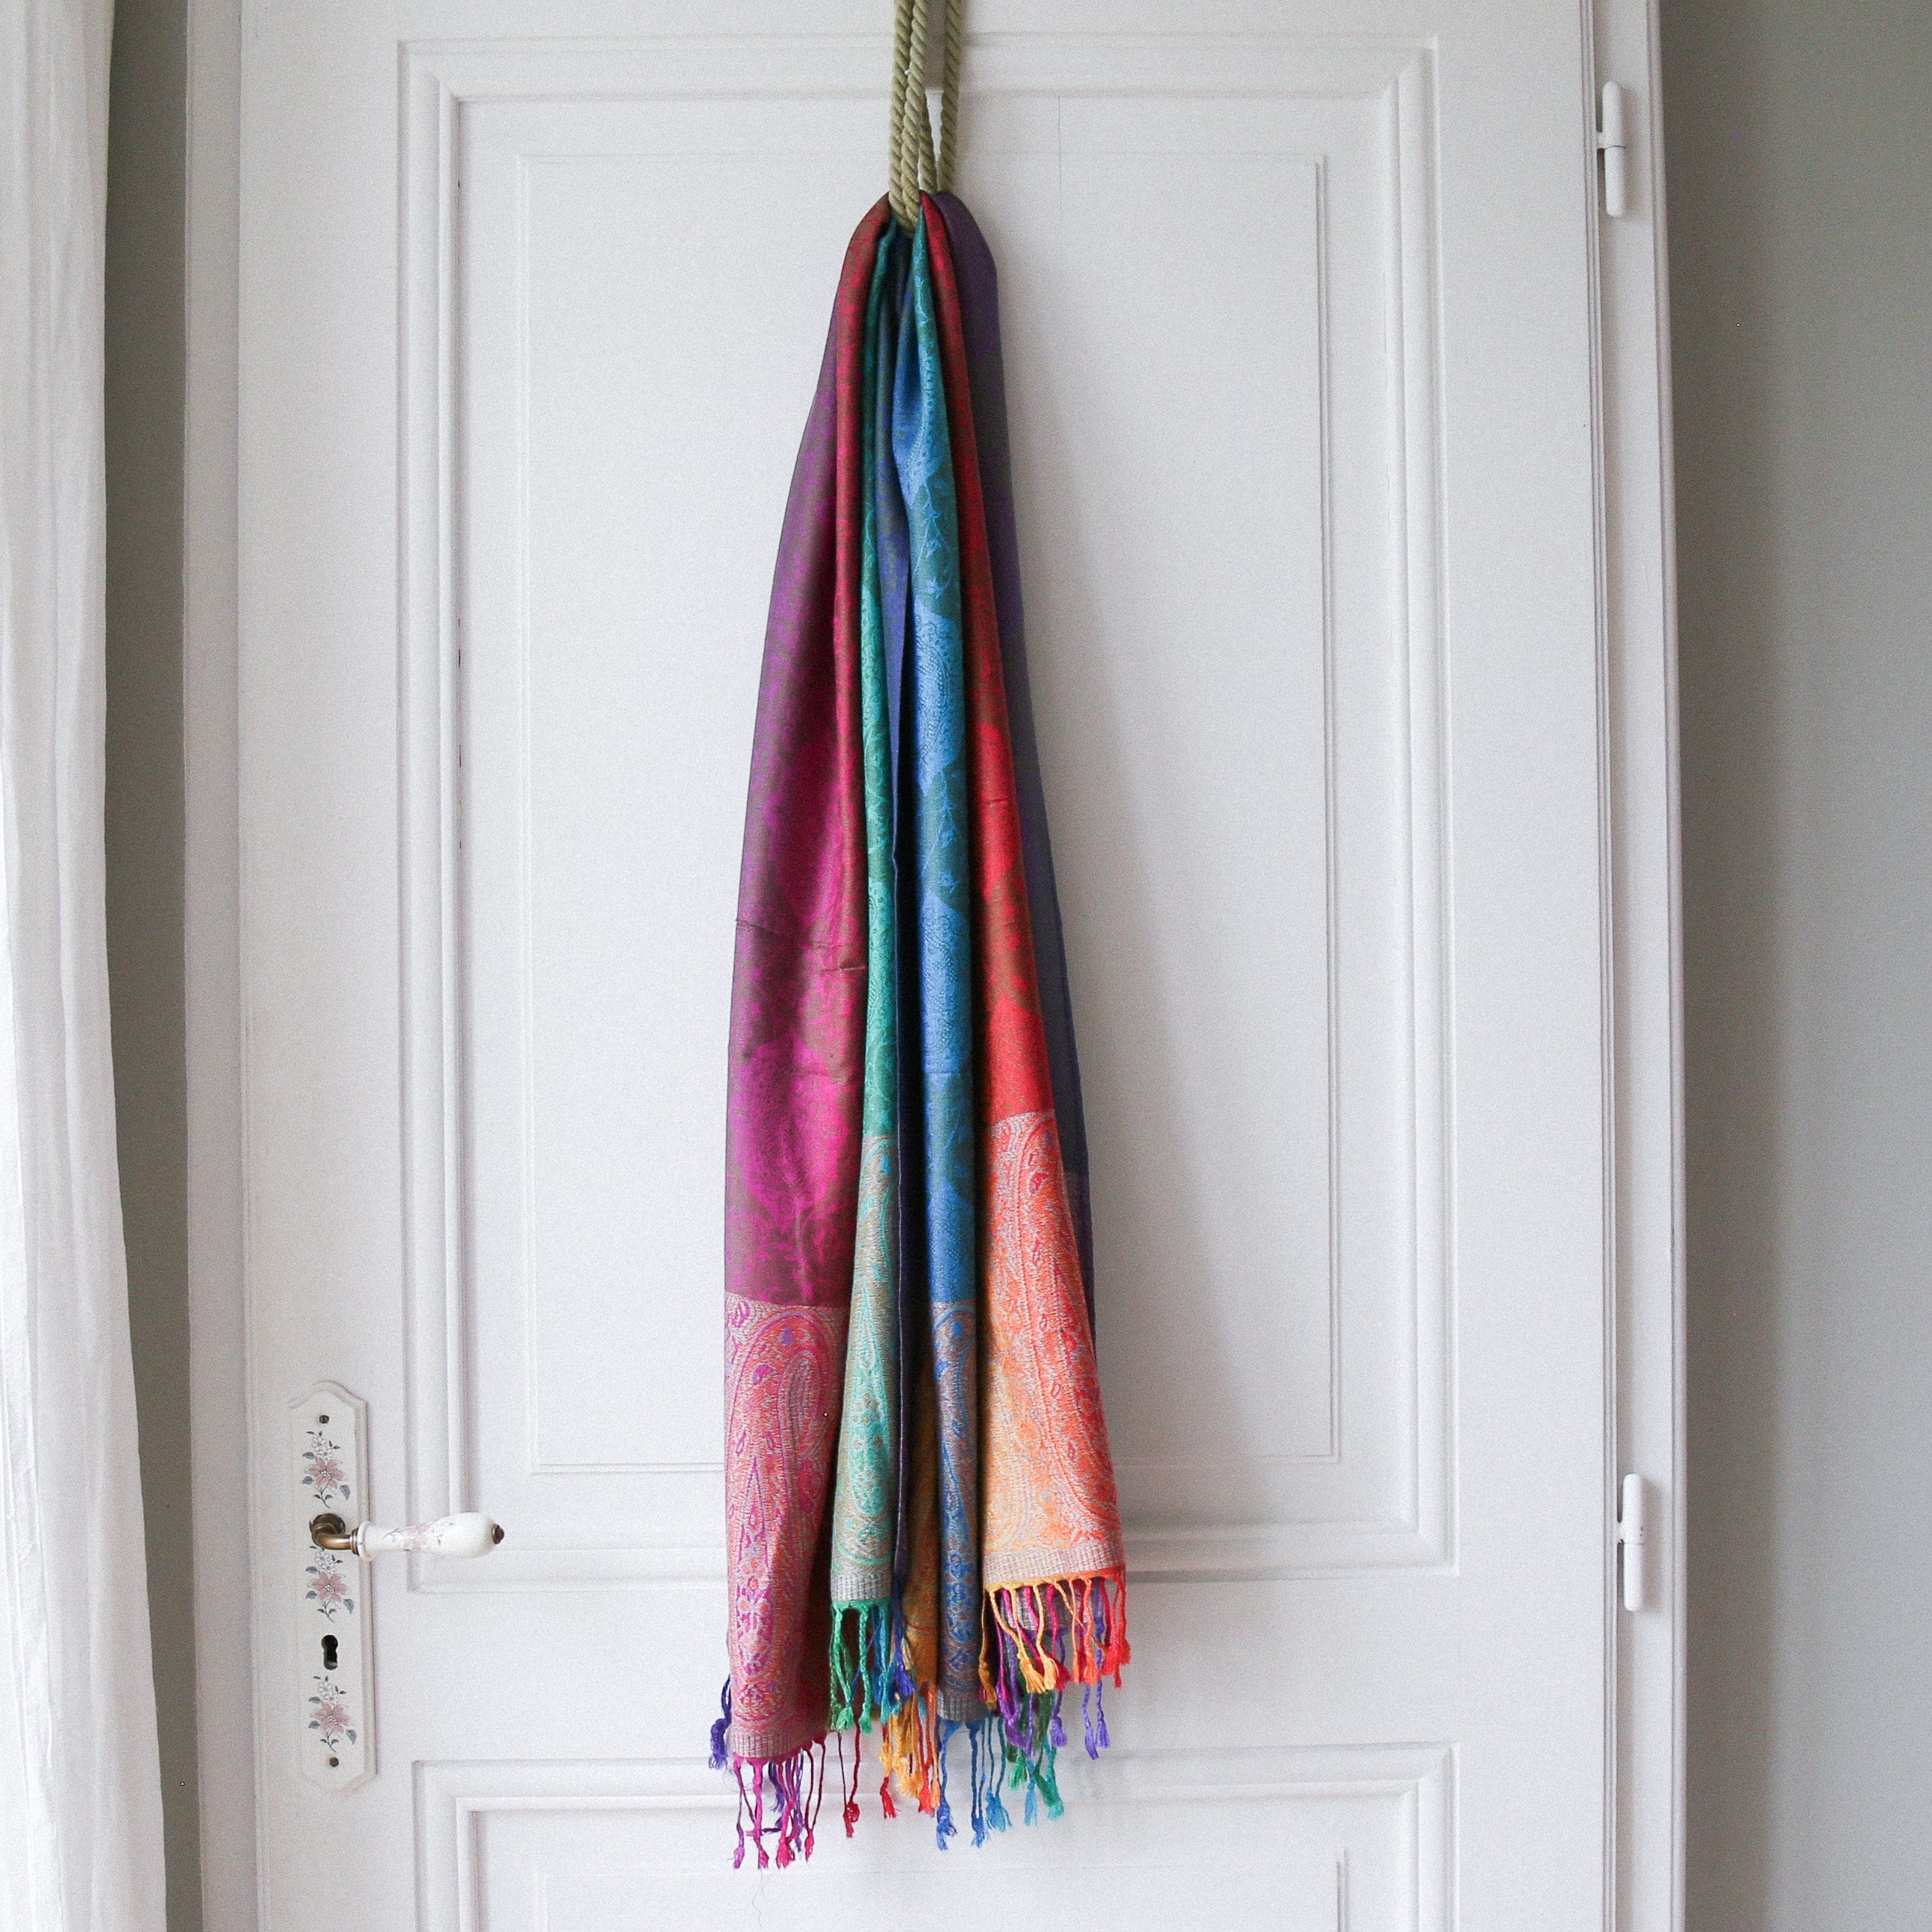 shawl Frederika - shawl